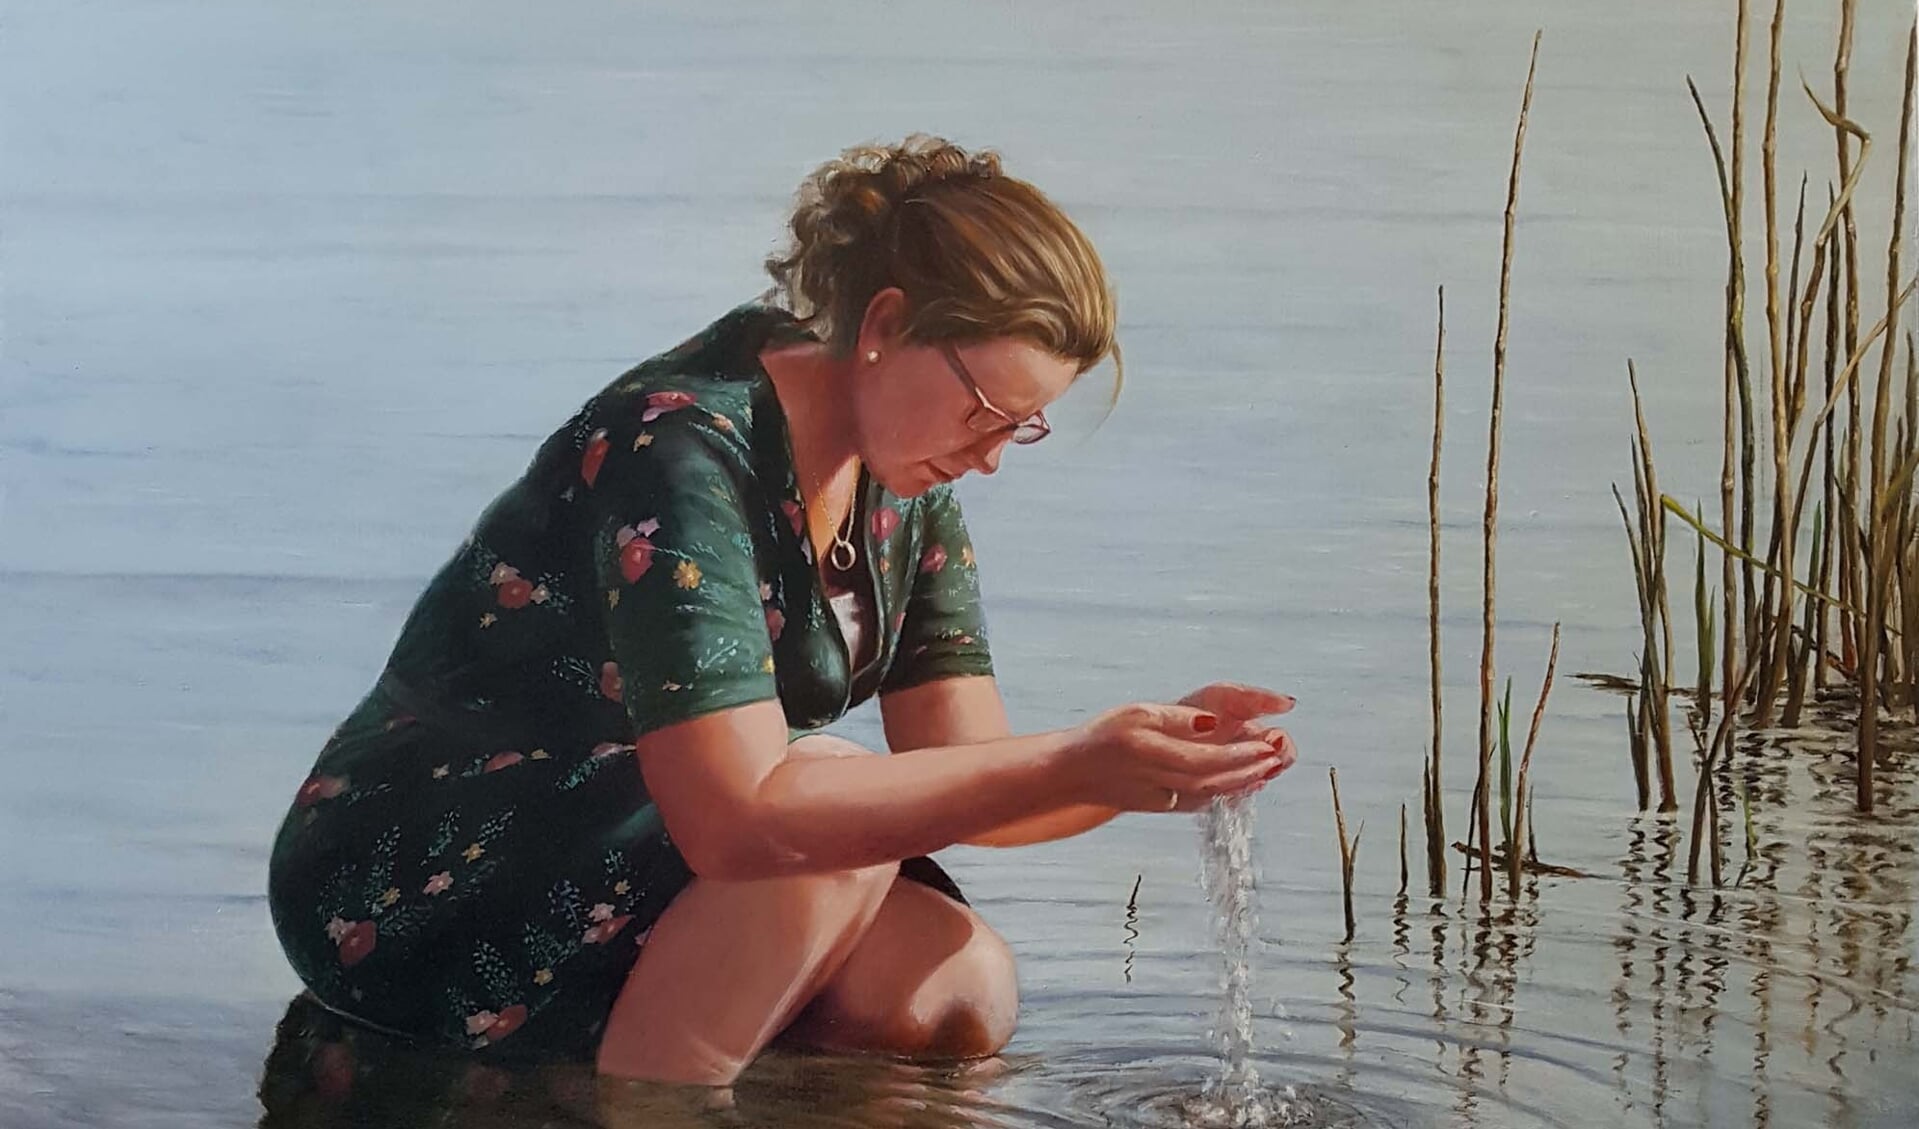 Ook in het boek: 'Dame bij een waterplas' van Ger-Jan Voerman. Foto: PR